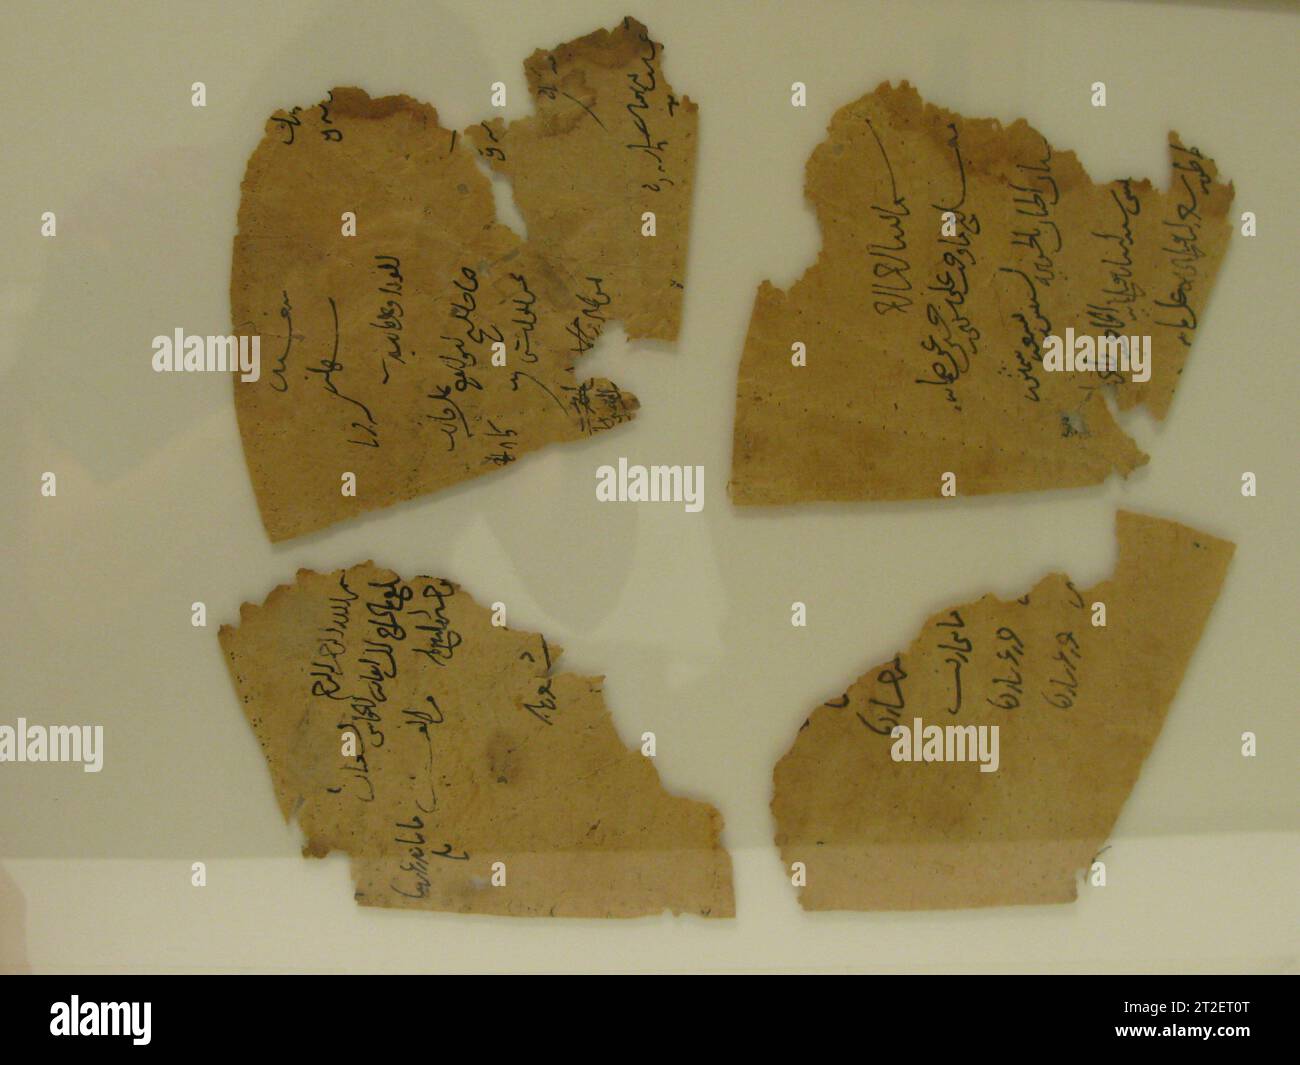 Doublure d'un chapeau 12e–13e siècle ces fragments de papier sont arrivés au Musée comme doublure intérieure d'un chapeau de soie (46.156.11a). Les lignes pliées très évidentes sont très probablement liées à cette utilisation. Alors que le textile de la calotte est attribué à Seldjouq Iran, le style des inscriptions sur ces fragments de papier est similaire aux écritures cursives ayyubides, fatimides tardives ou mamelouks précoces. Banque D'Images